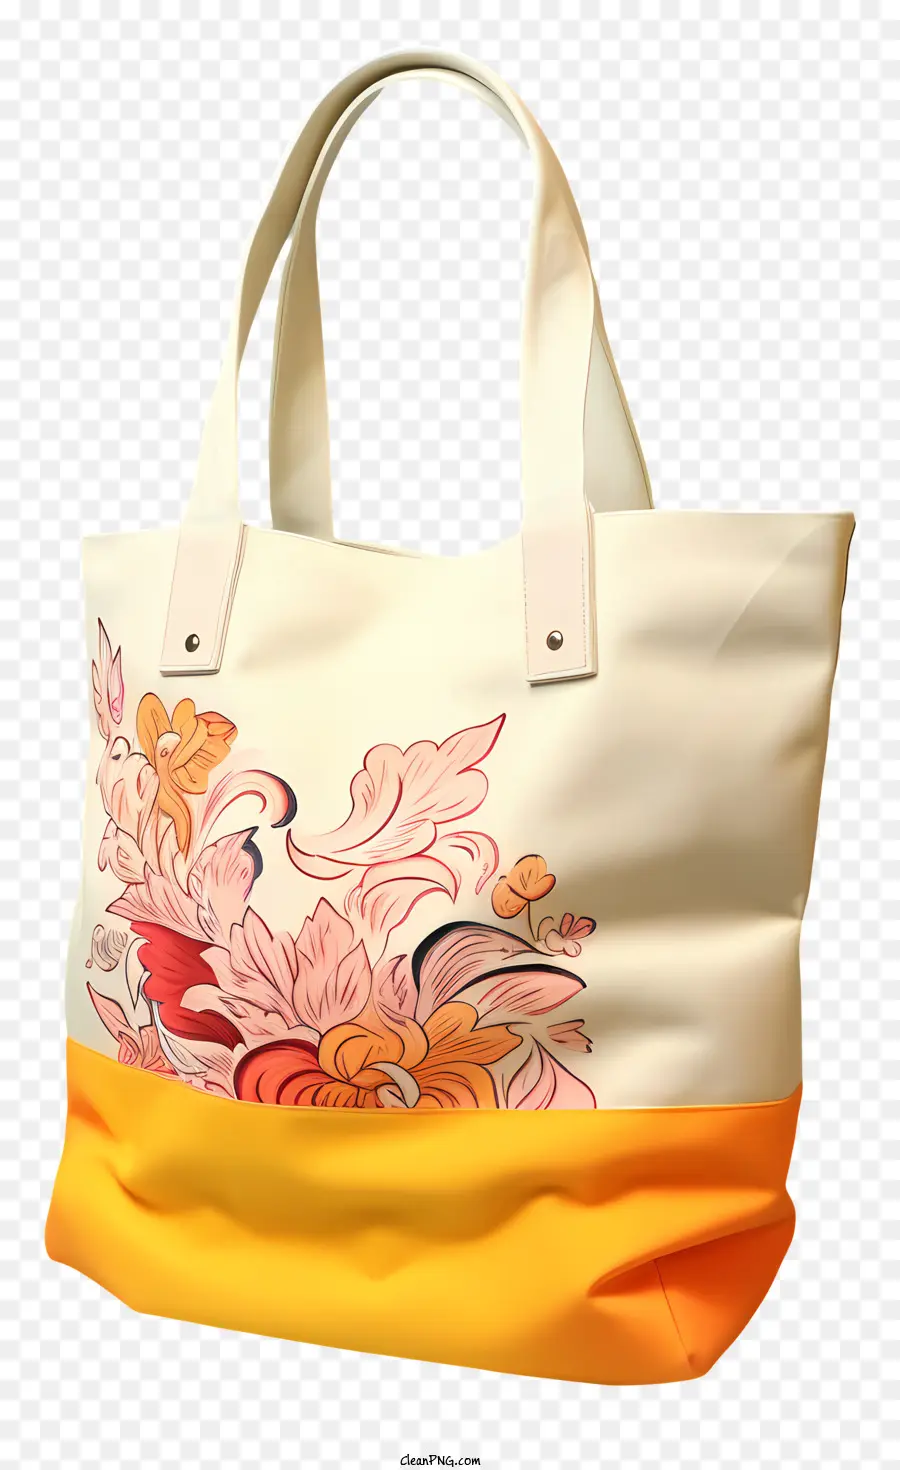 trái cam - Túi thiết kế hoa trắng, cam và đen với nhiều ngăn và tay cầm có thể điều chỉnh